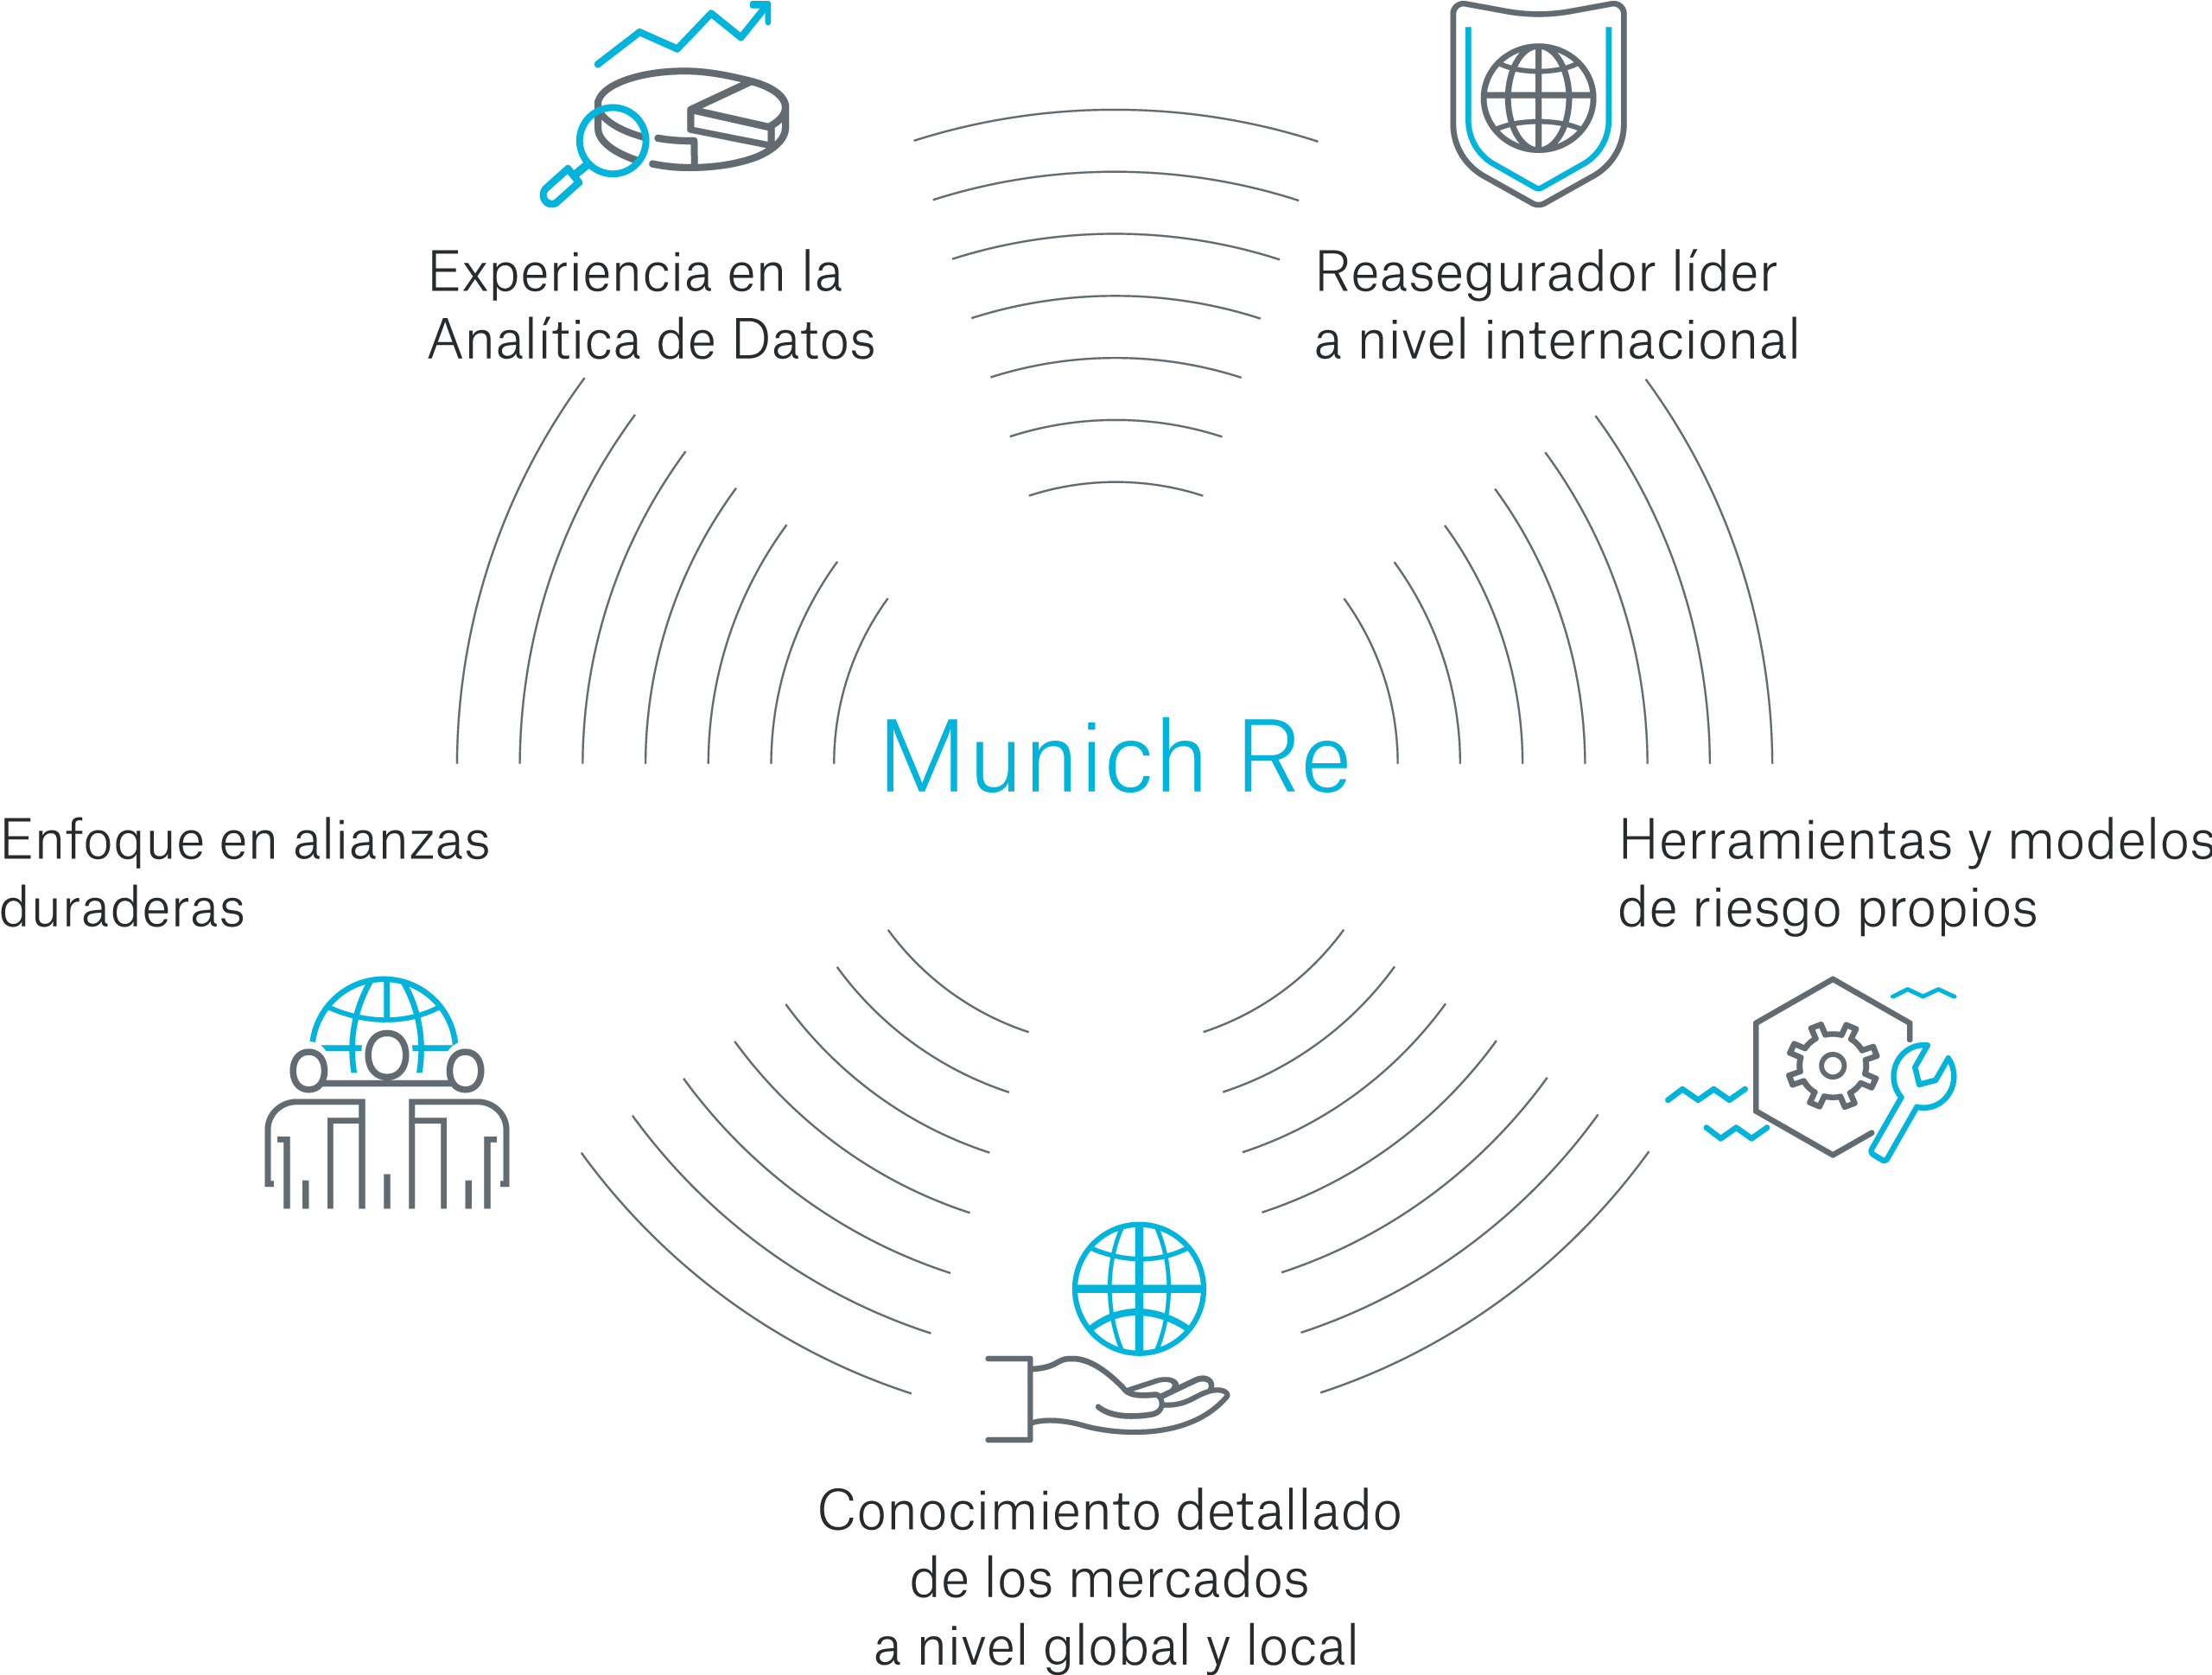 Gráfico que muestra la experiencia y los conocimientos de Munich Re en analítica de datos.